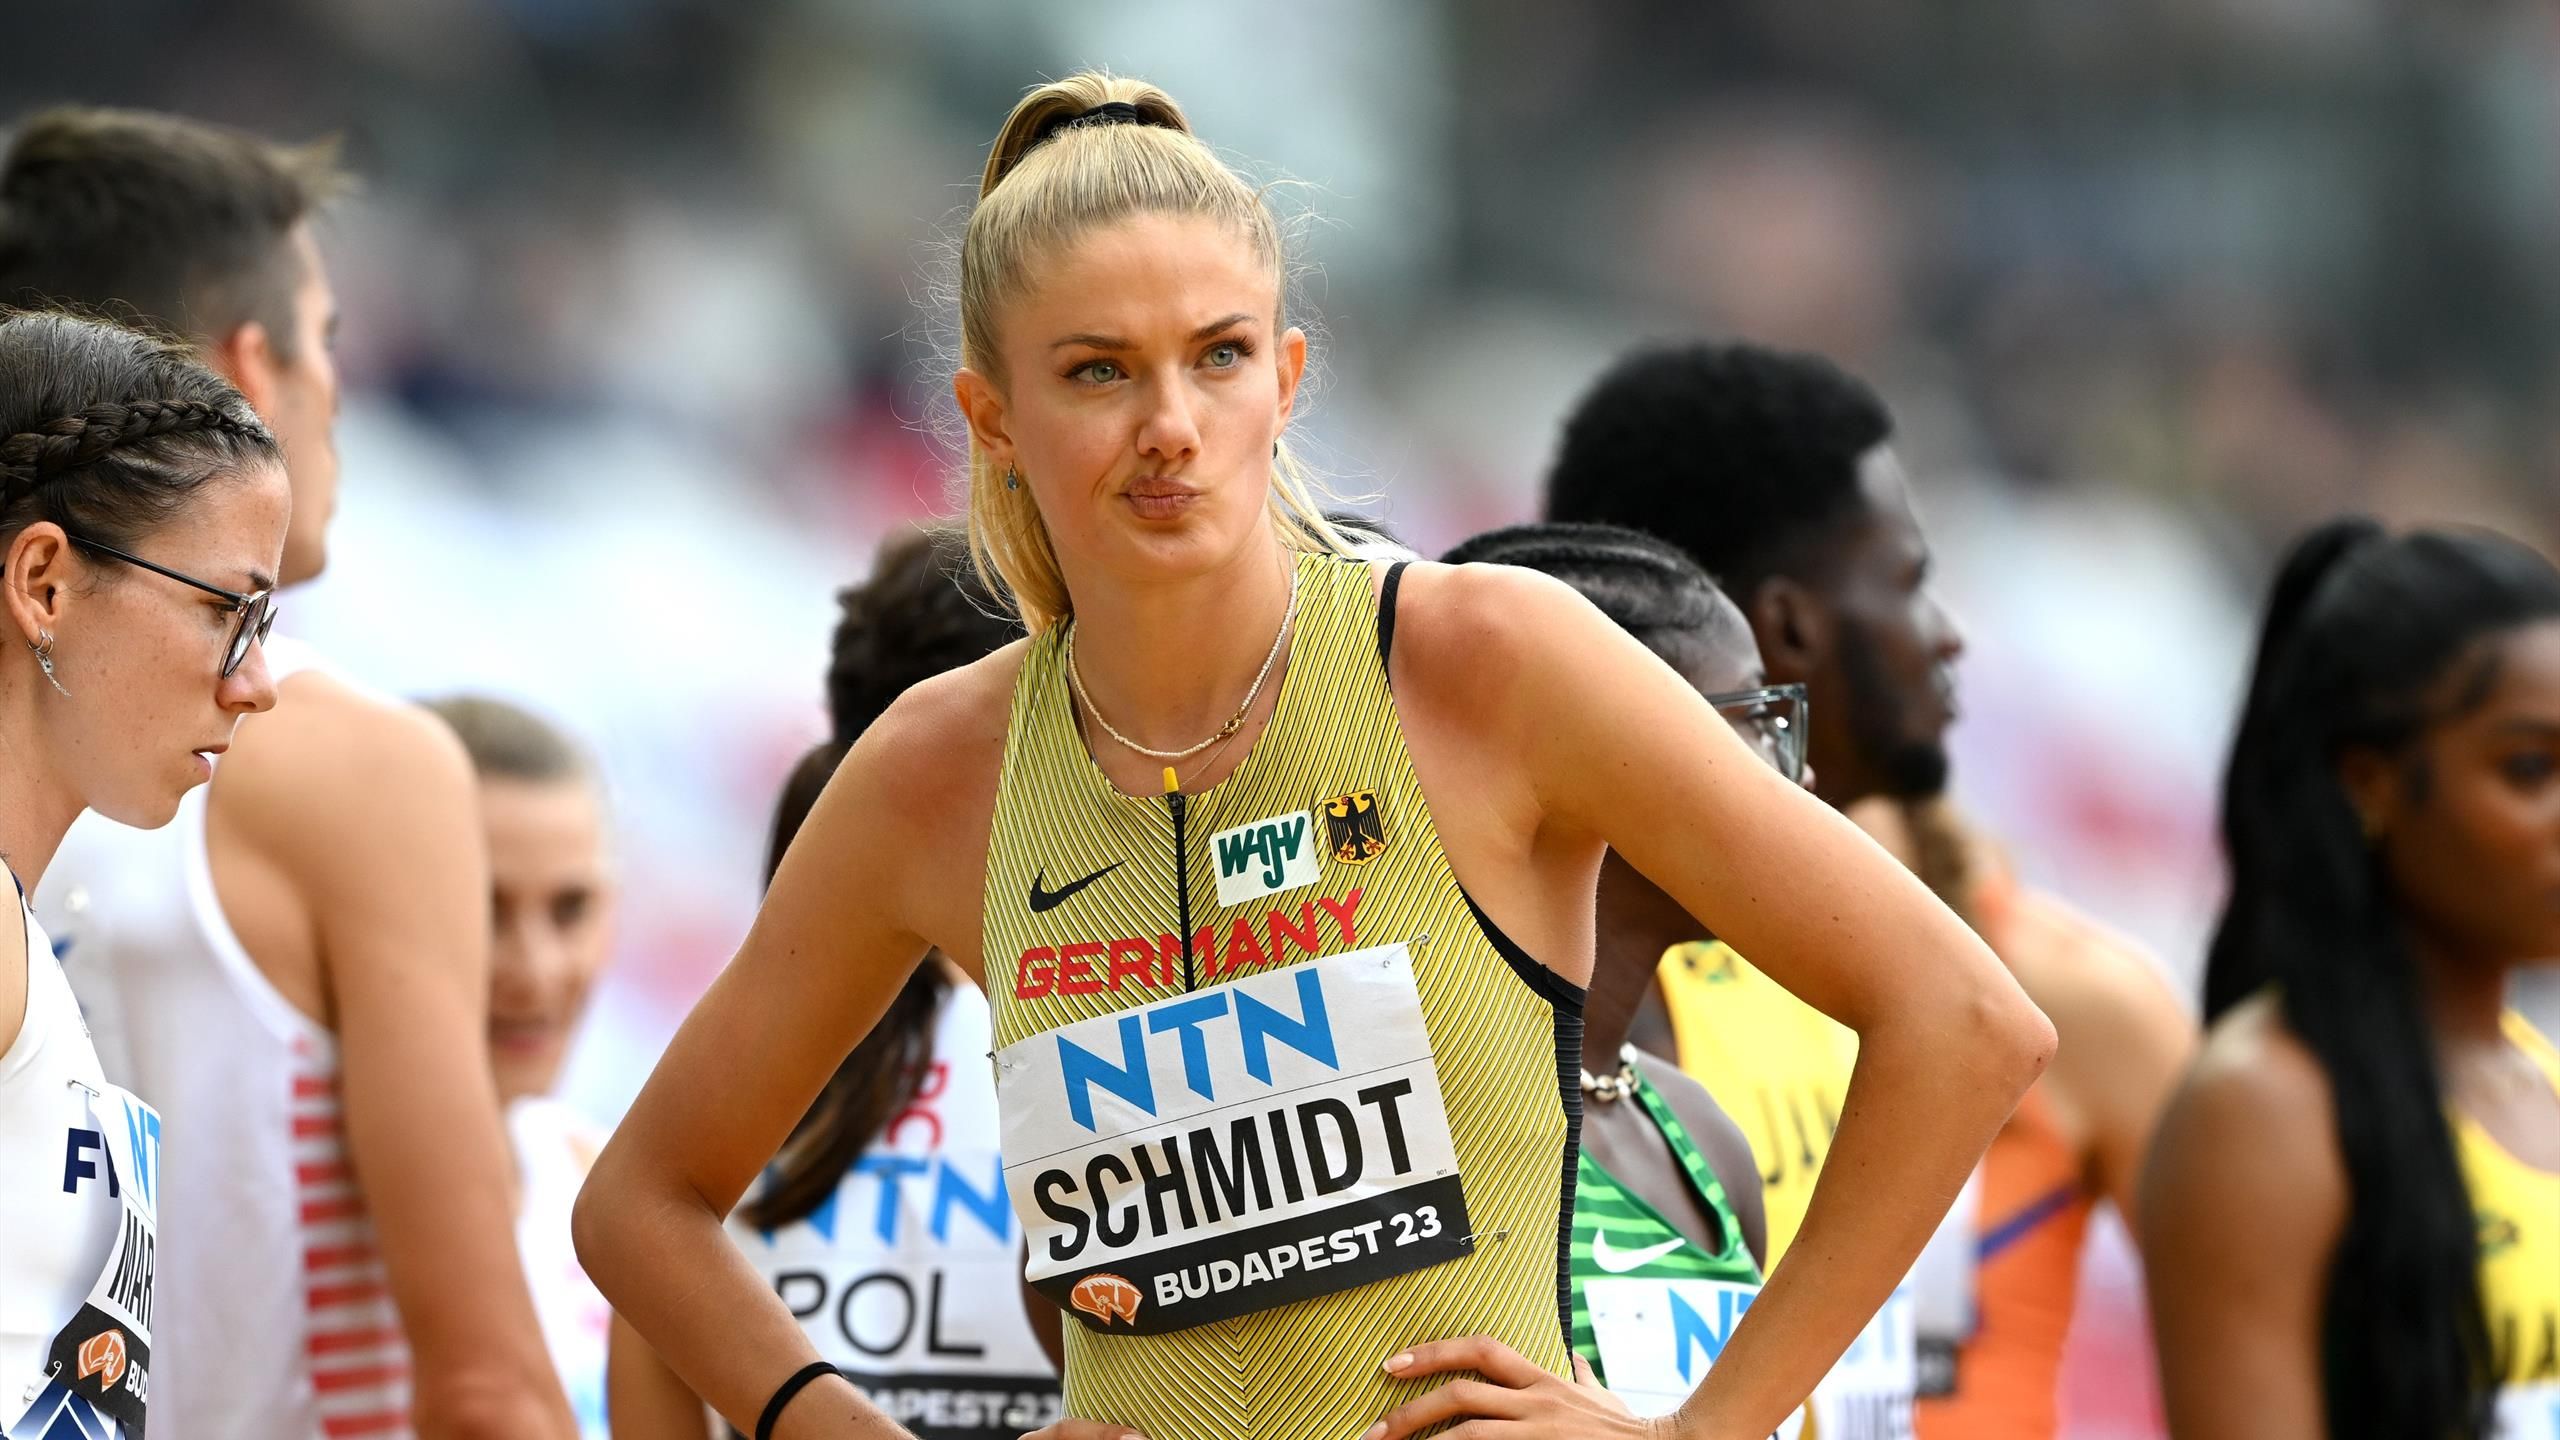 Leichtathletik-WM 2023 DLV-Frauen-Staffel mit Schmidt über 4x400 m ausgeschieden - auch Männer raus